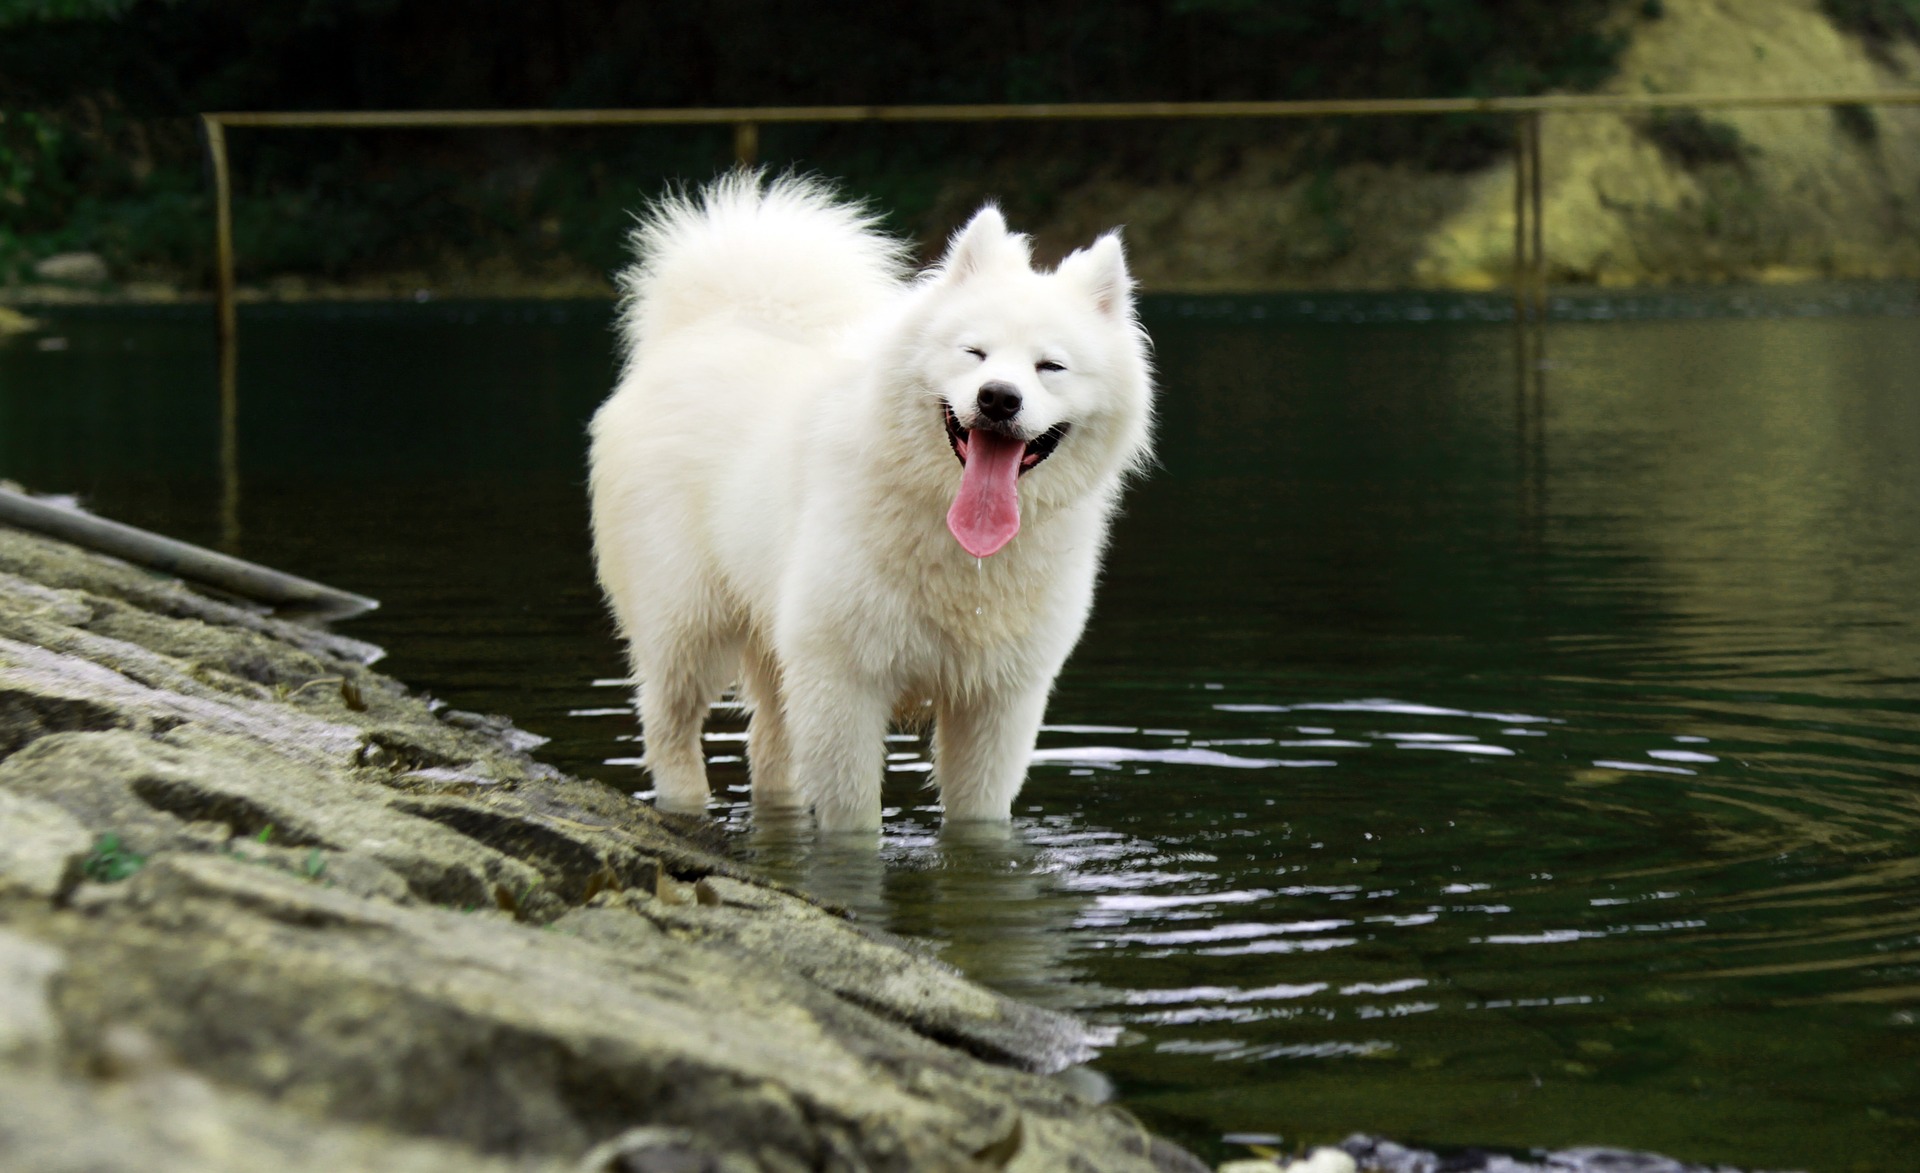 Enciclopedia dei cani: Samoiedo (Samoyed), che è un orso bianco come la neve, sorridente, appartenente alla sezione degli spitz e dei cani primitivi